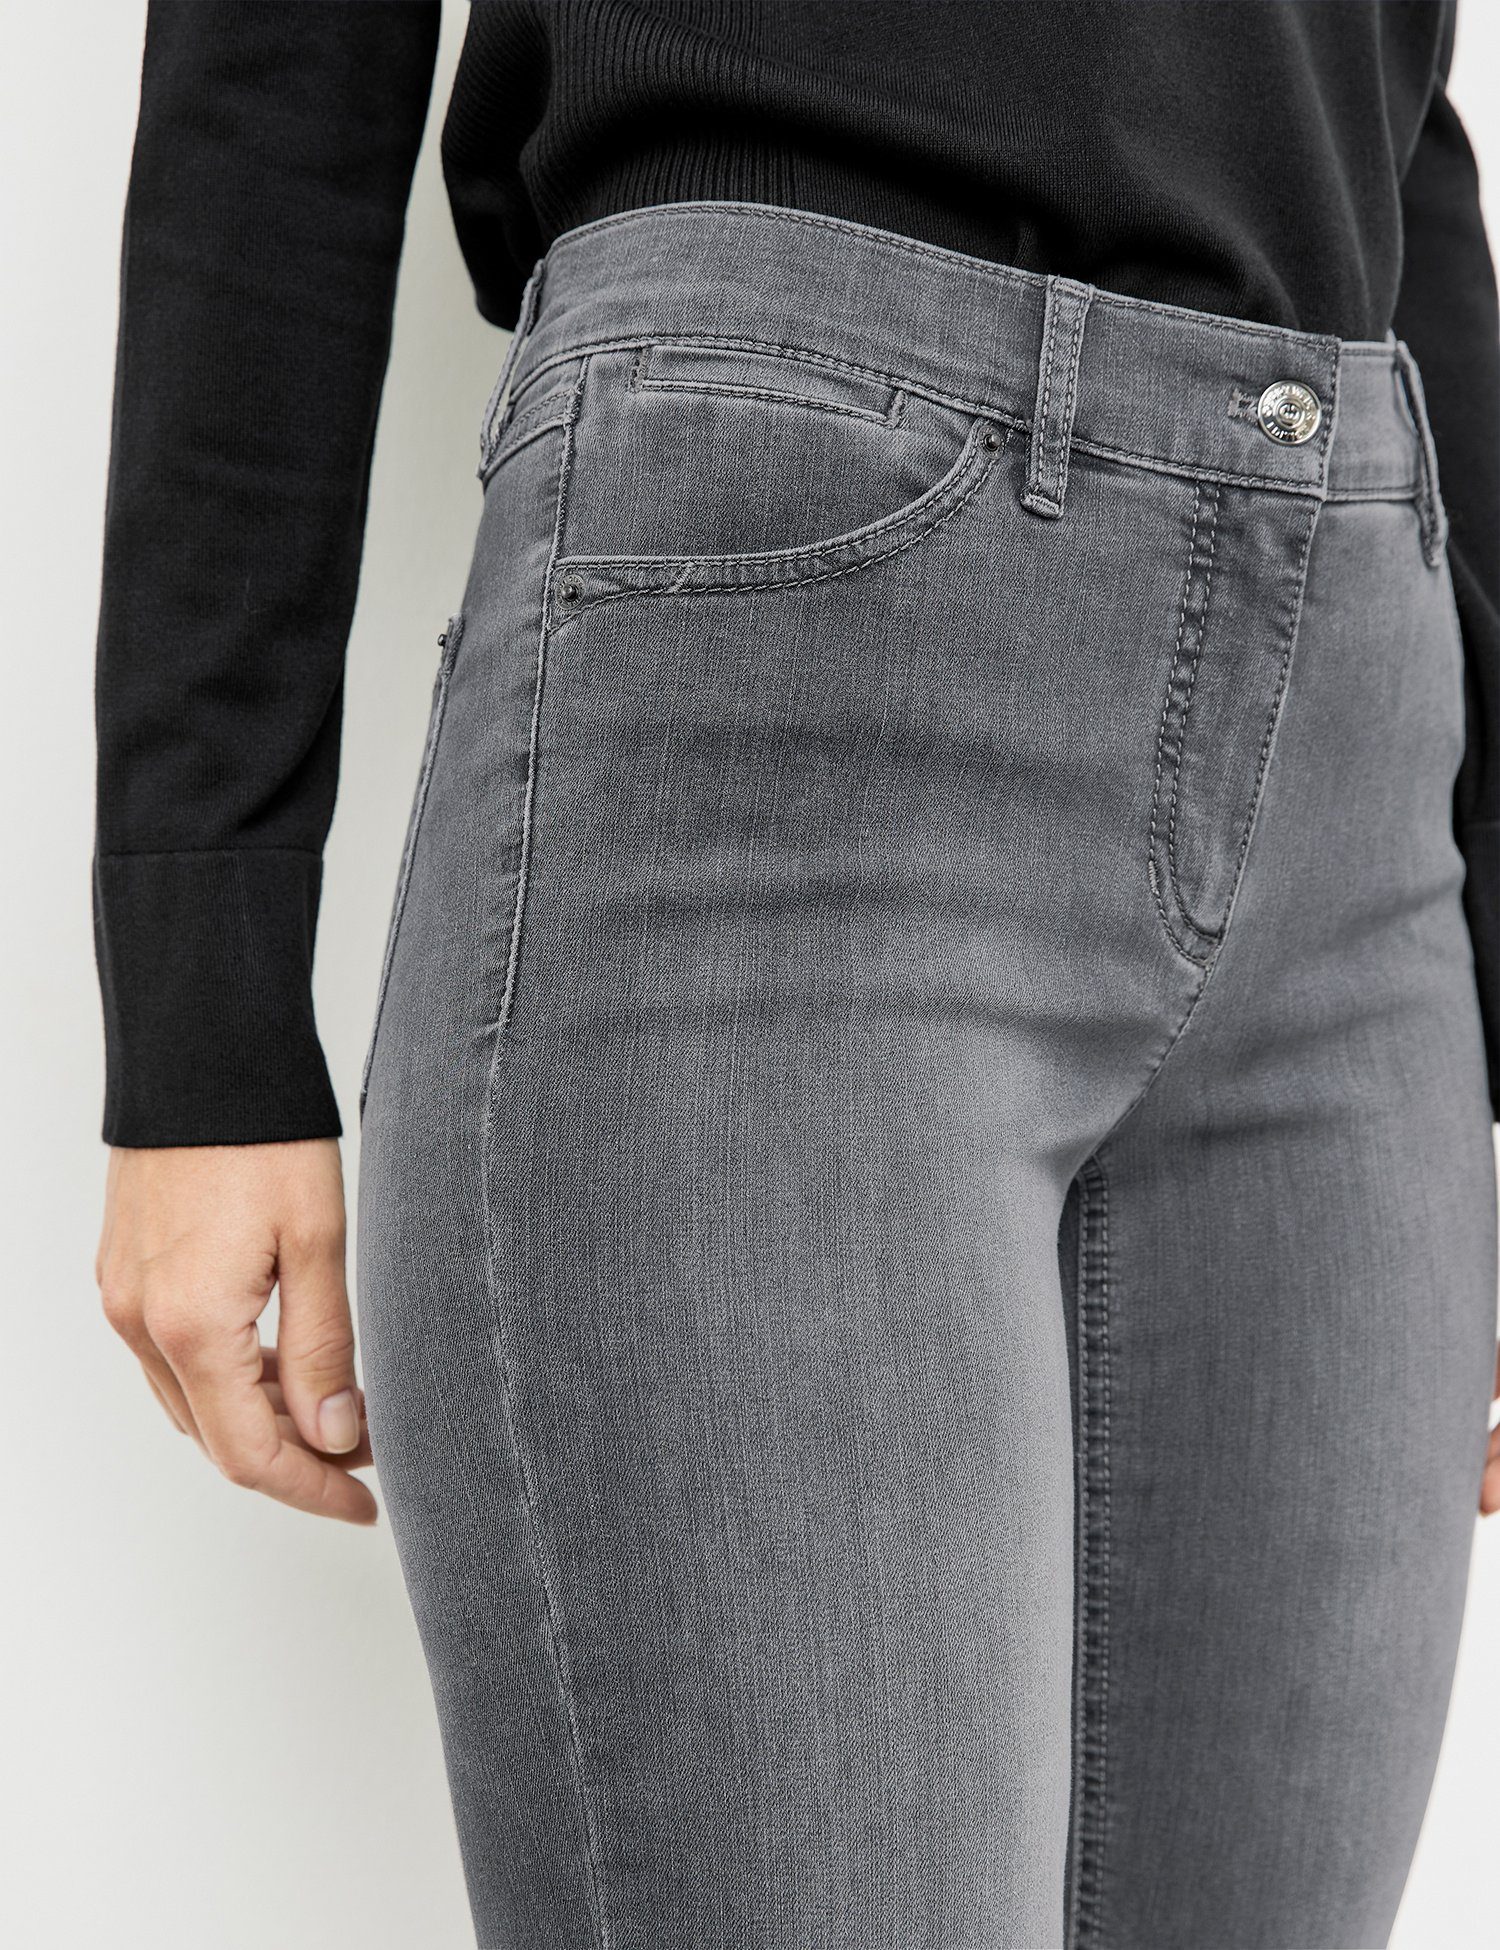 Stretch-Jeans 5-Pocket Jeans WEBER Best4me Anthra use GERRY Denim mit Skinny